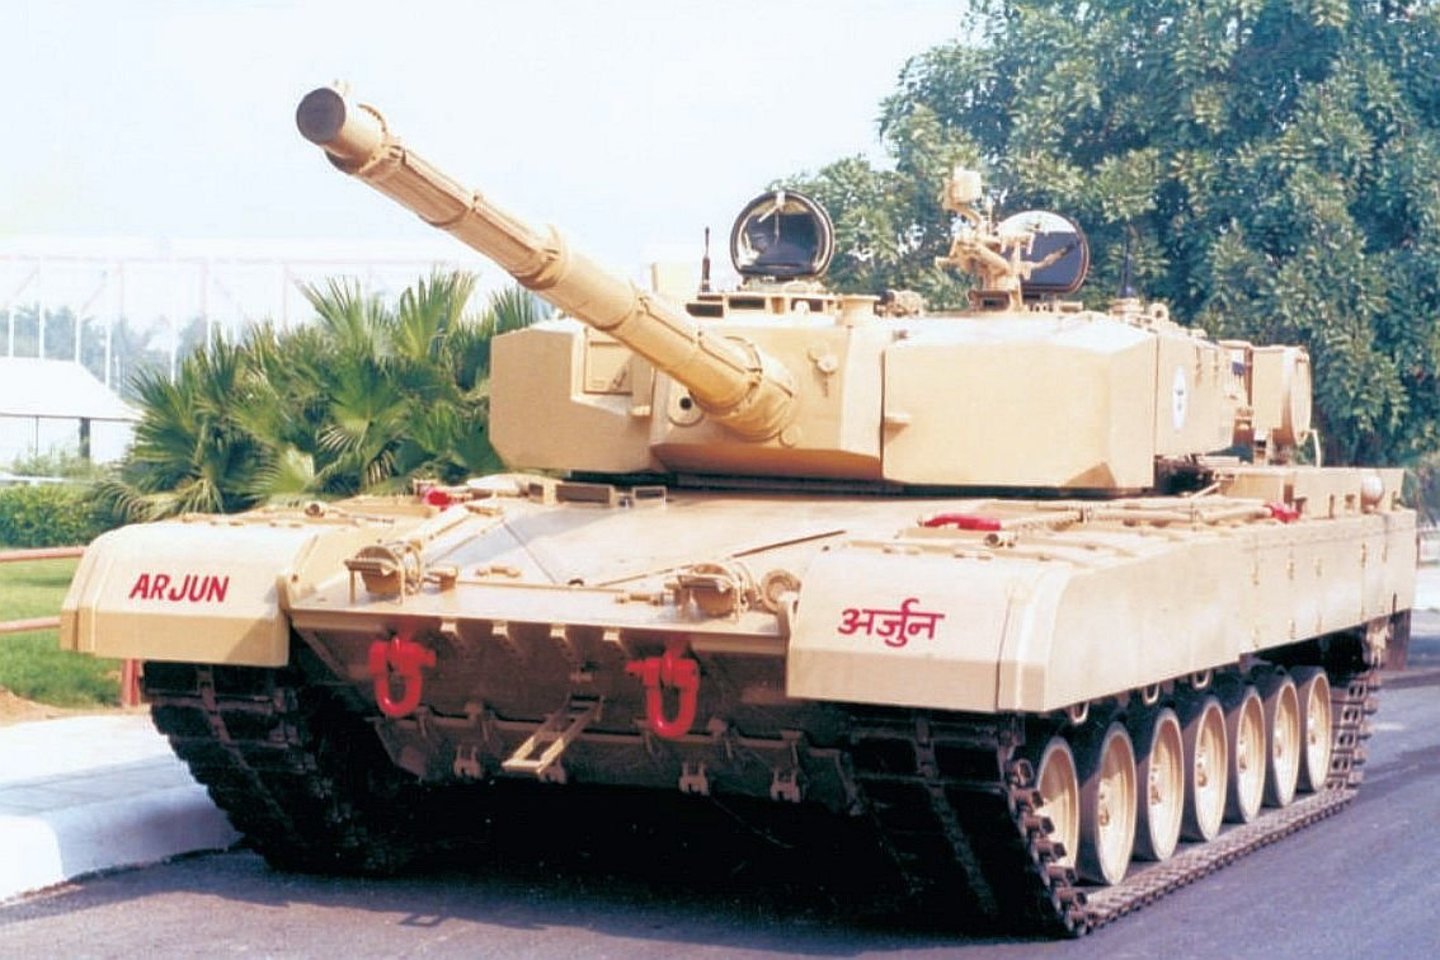  2009 m. „Arjun Mk.1“ pradėjo tarnauti Indijos kariuomenėje – tačiau kariuomenė nenoriai pirko tai, kas jau pagarsėjo kaip mechaniškai nepatikima mašina.<br> Wikimedia commons